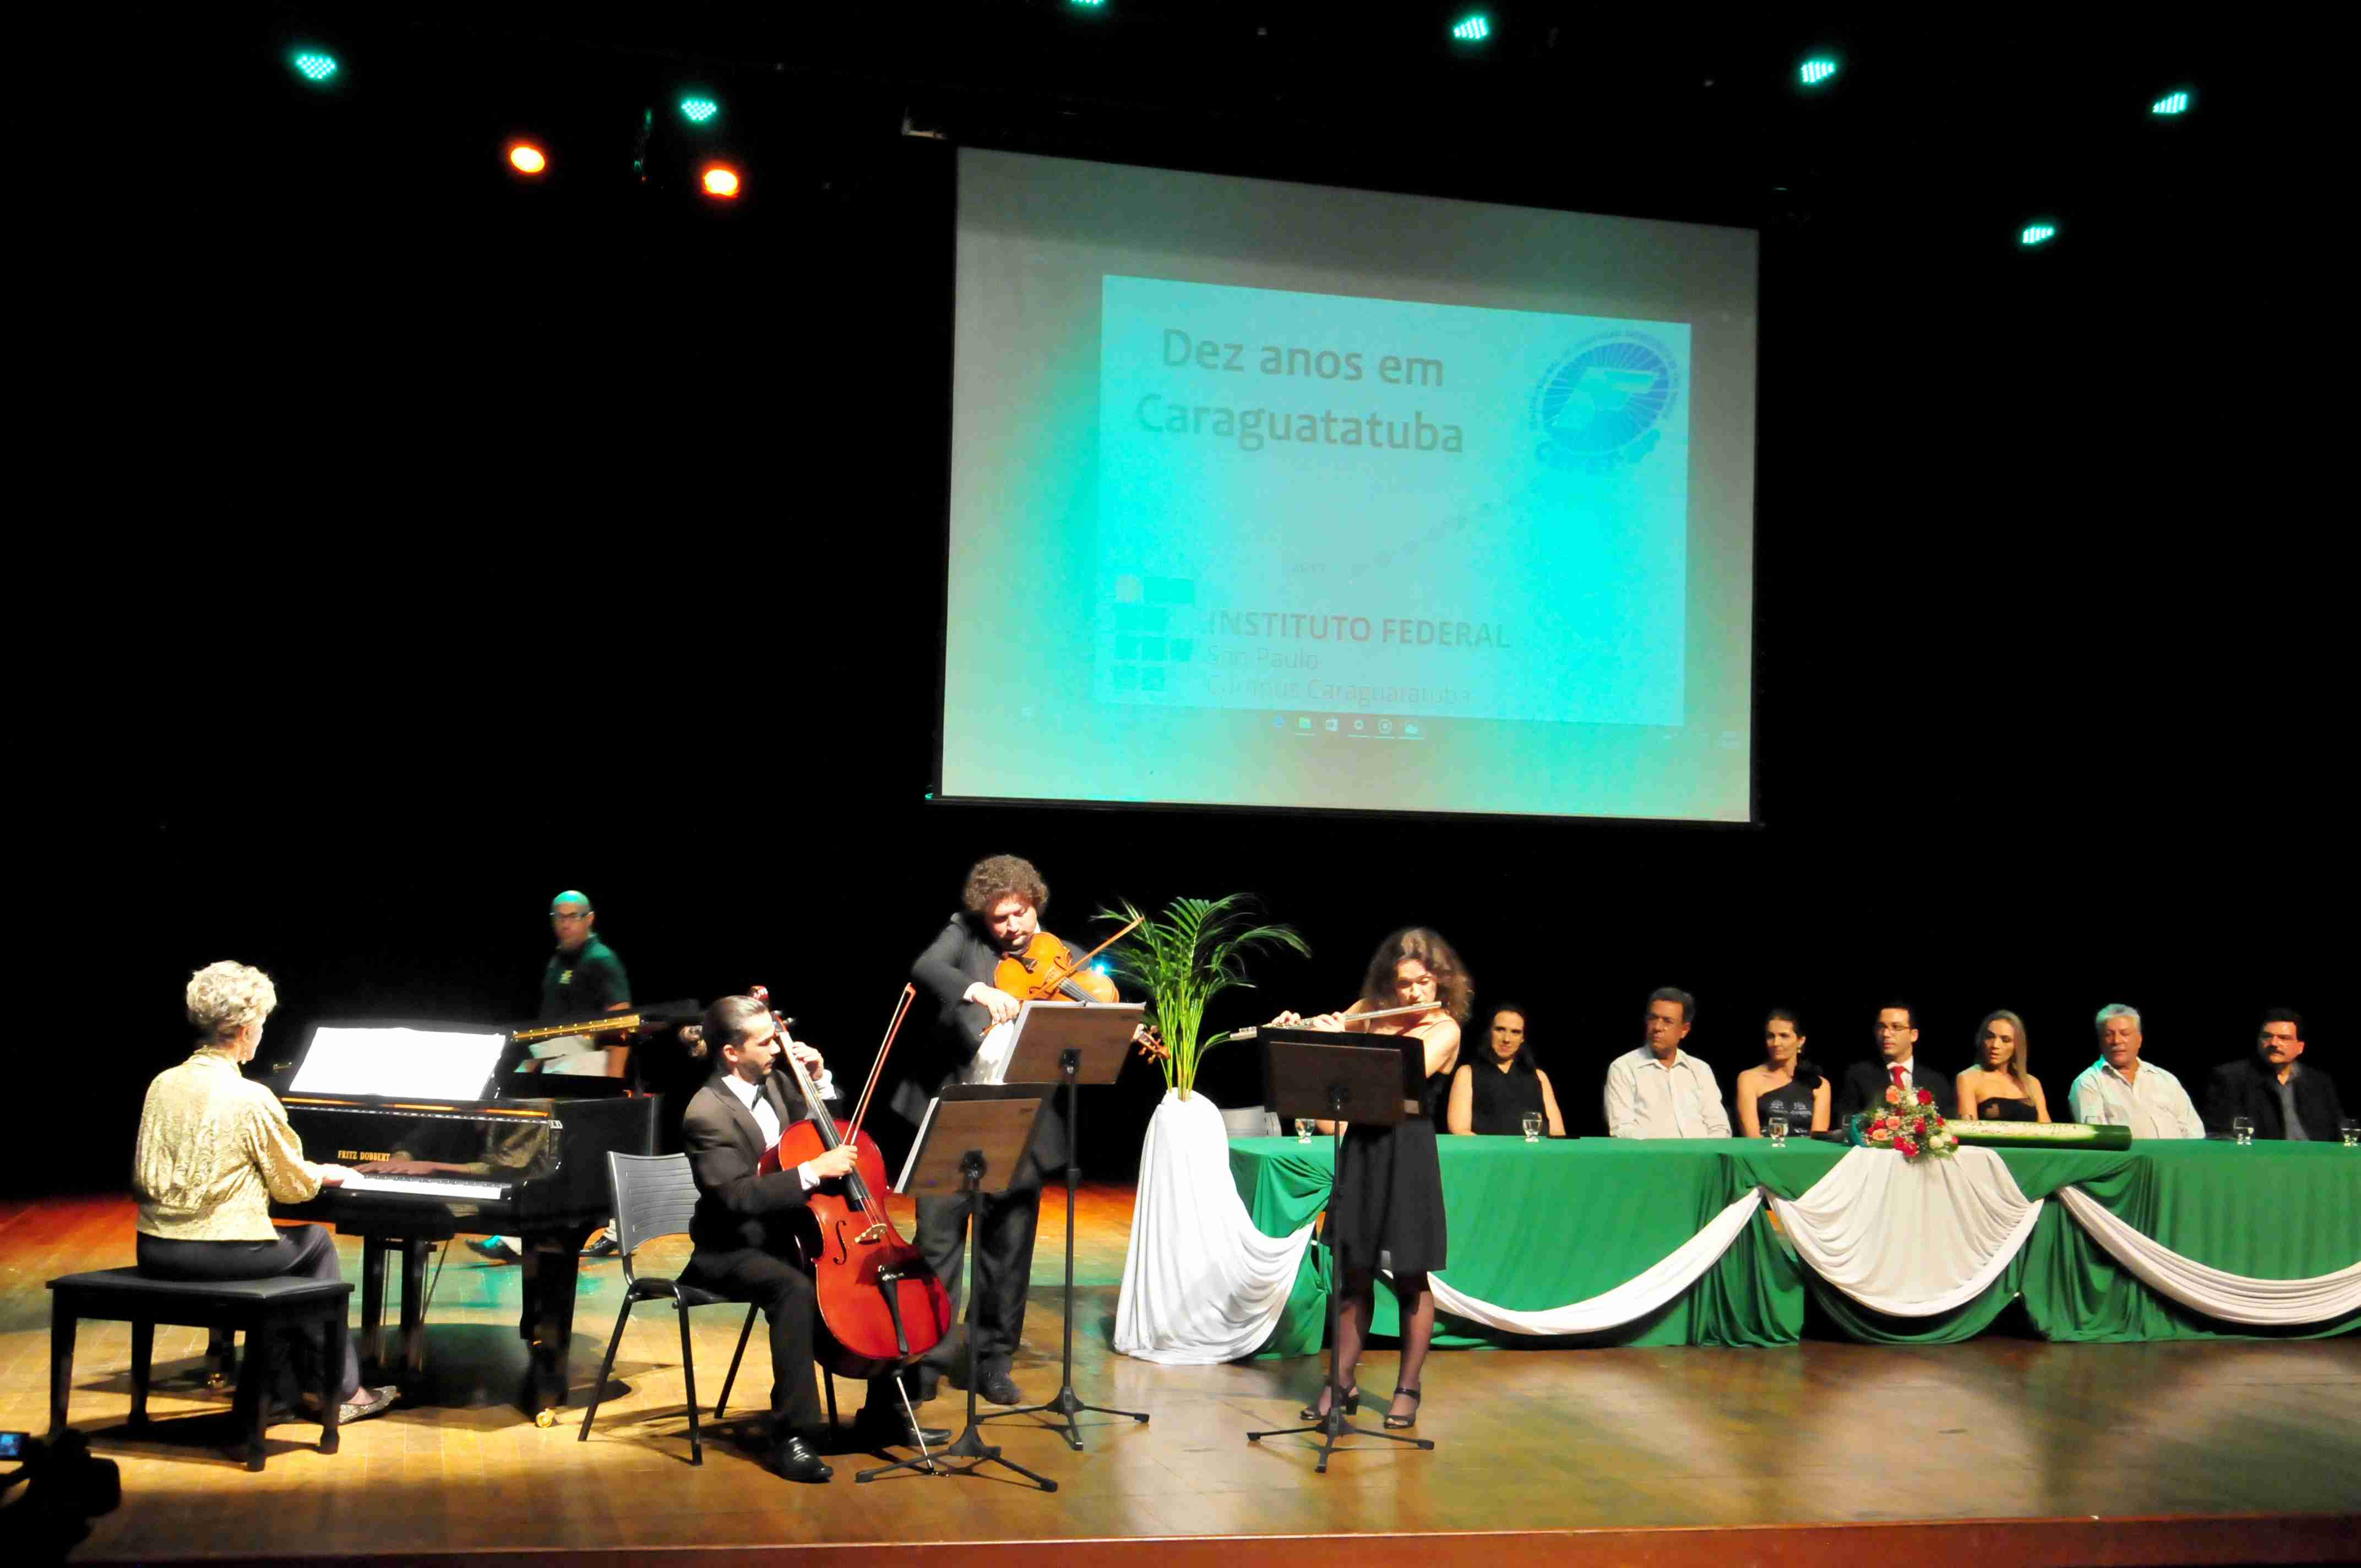 Solenidade comemora 10 anos do IFSP em Caraguatatuba